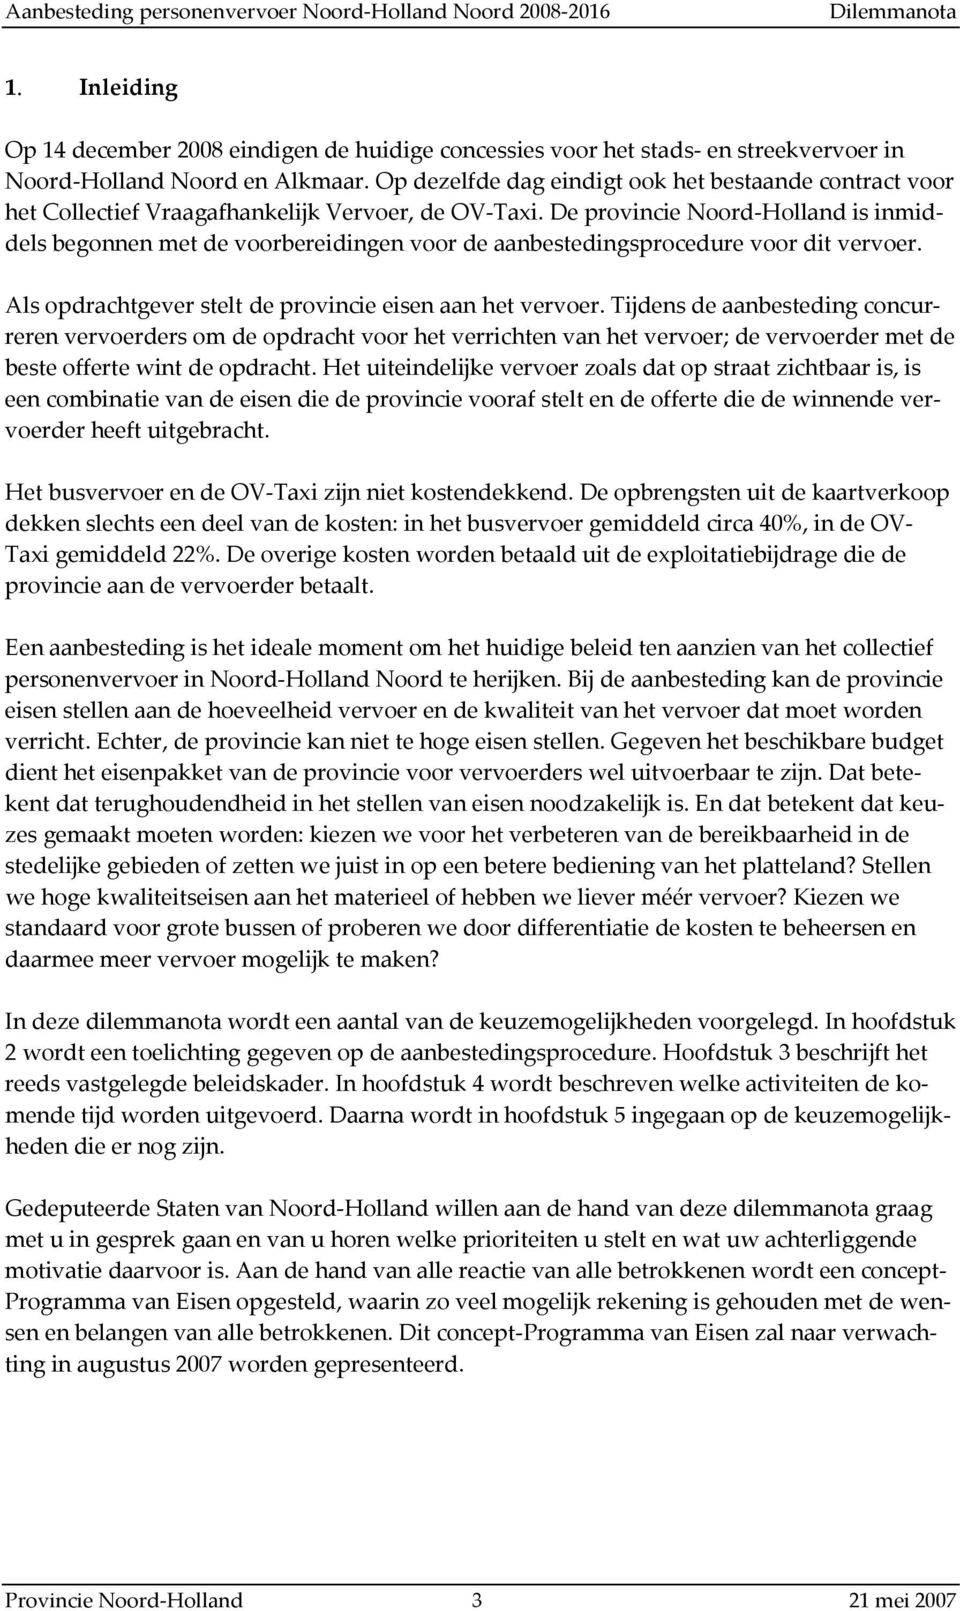 De provincie Noord-Holland is inmiddels begonnen met de voorbereidingen voor de aanbestedingsprocedure voor dit vervoer. Als opdrachtgever stelt de provincie eisen aan het vervoer.